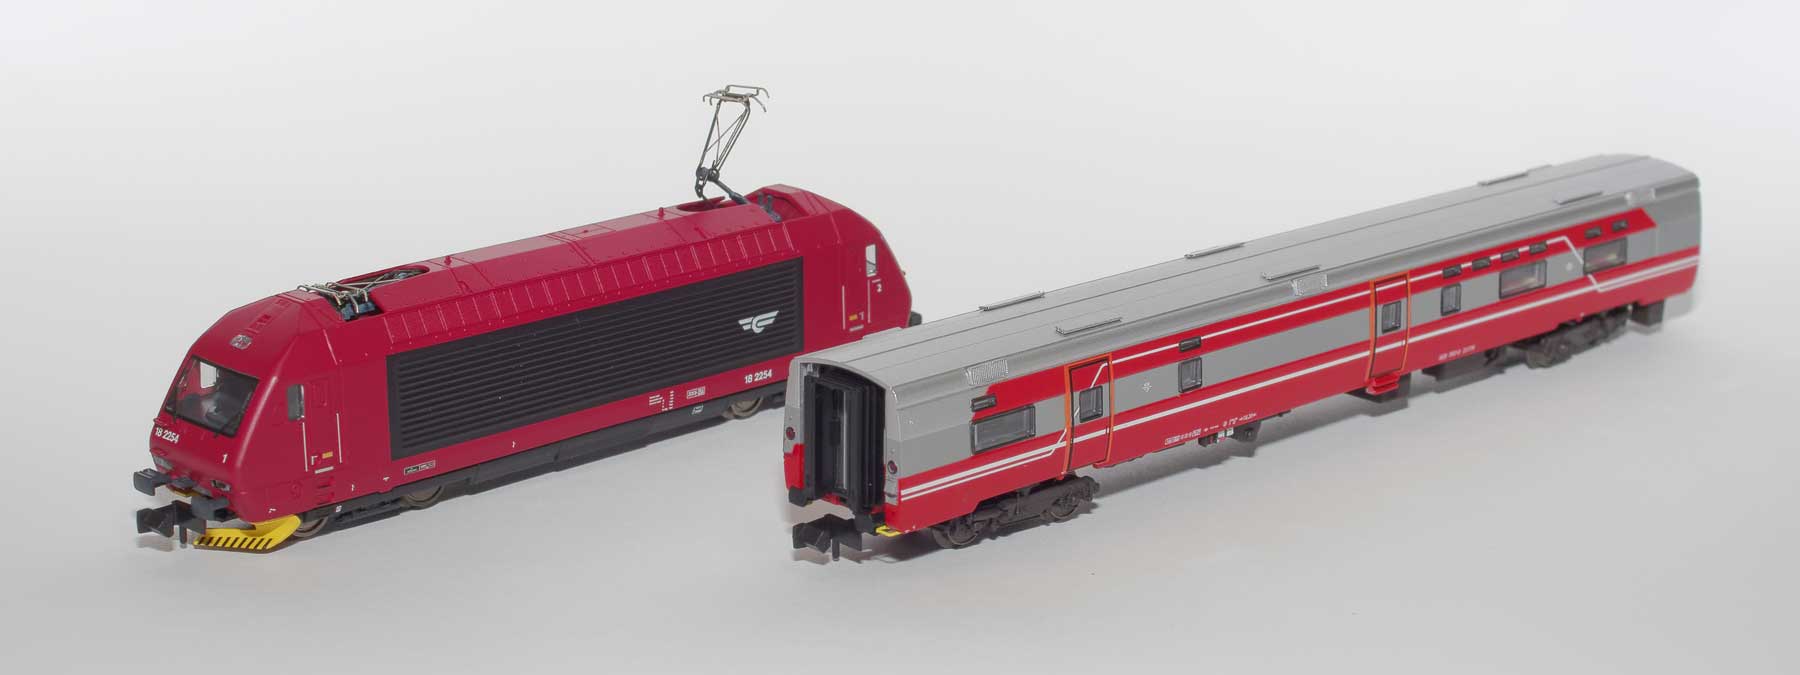 Set 18003: NSB Expresszug-Speisewagen FR7-3 mit passender Lok El18